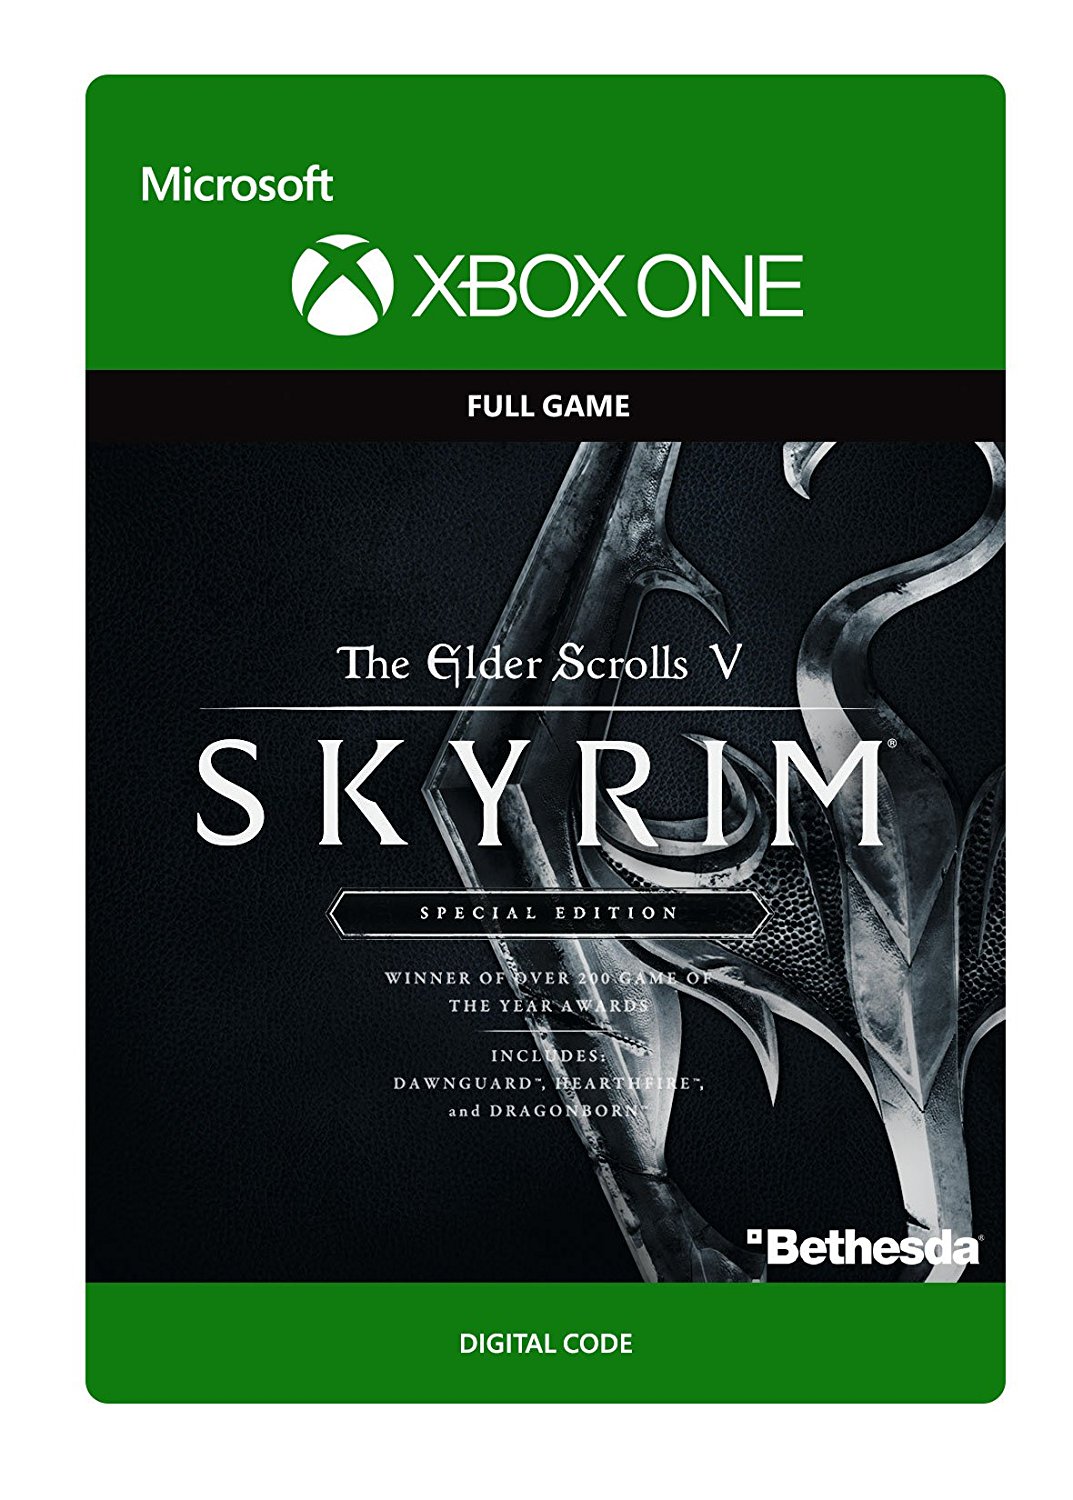 The Elder Scrolls V Skyrim Download